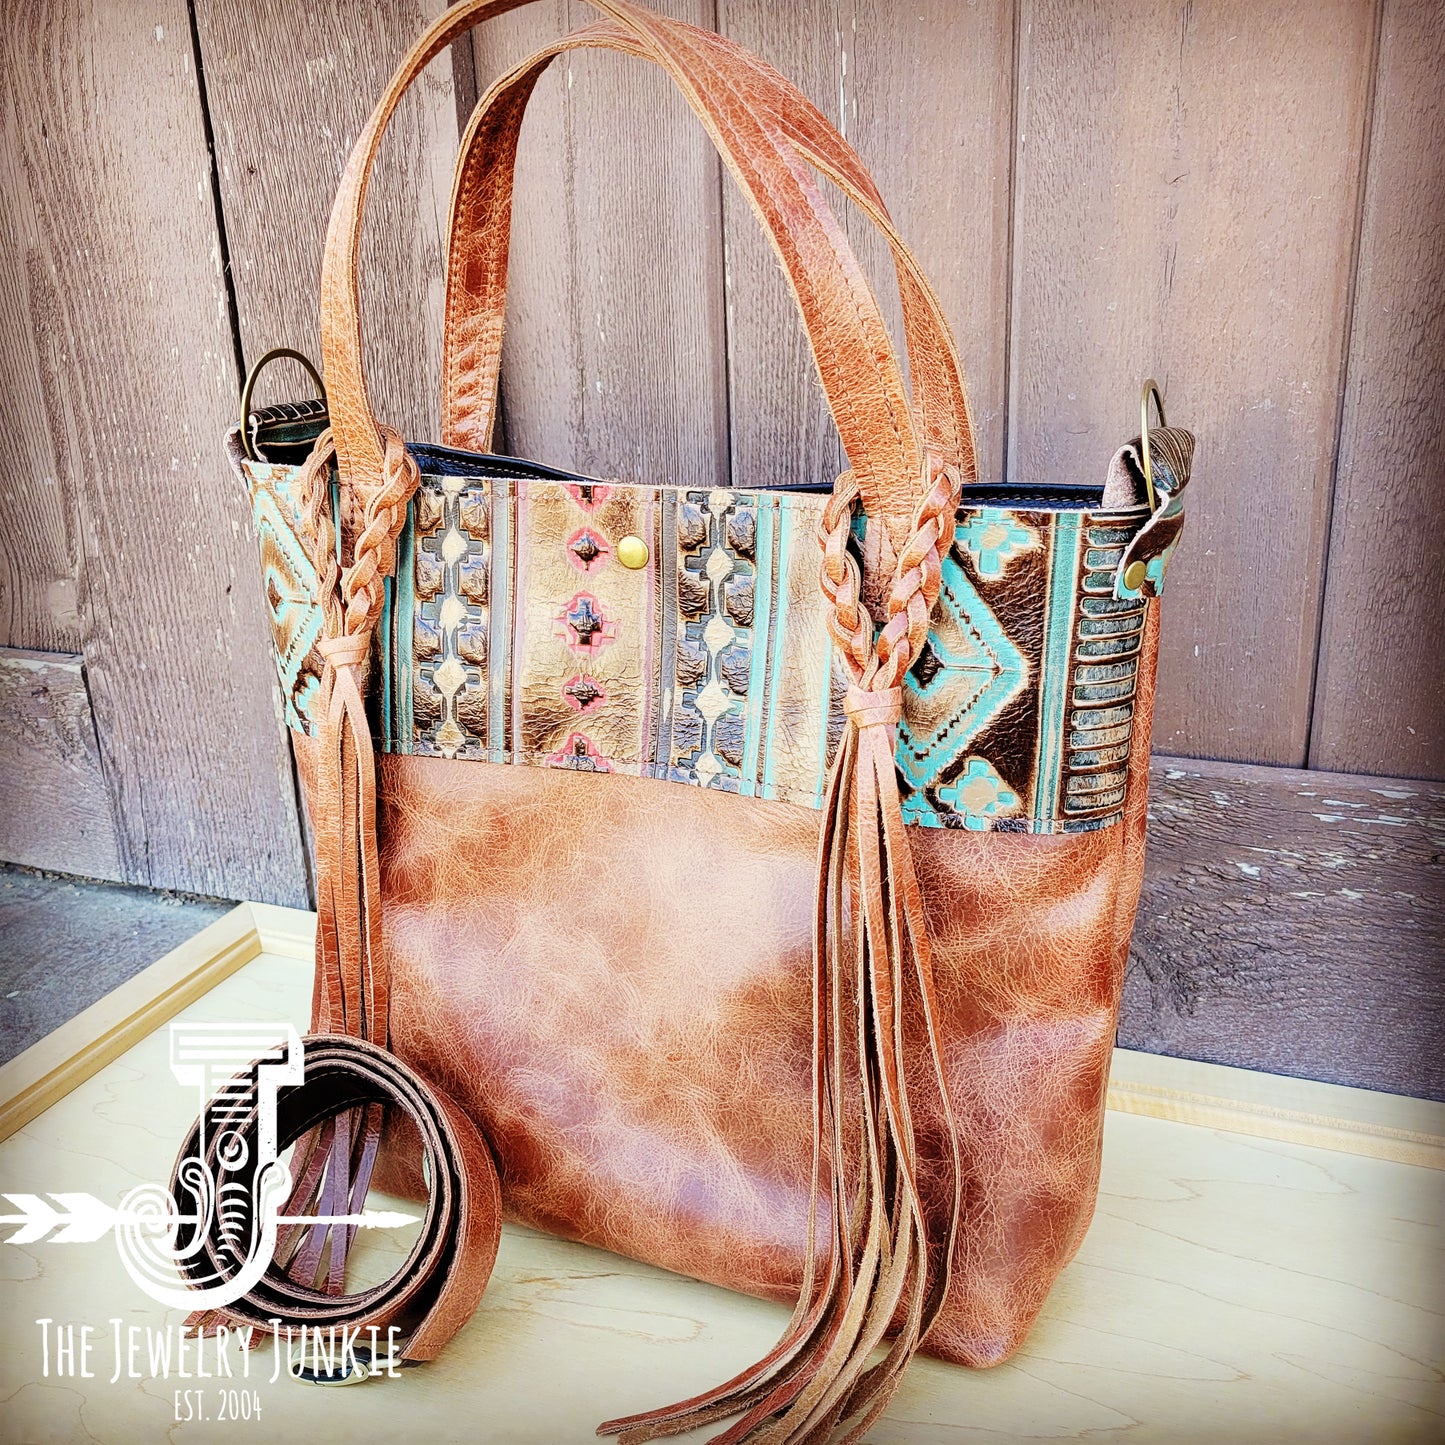 Tejas Leather Bucket Hide Handbag with Navajo Accent 506v